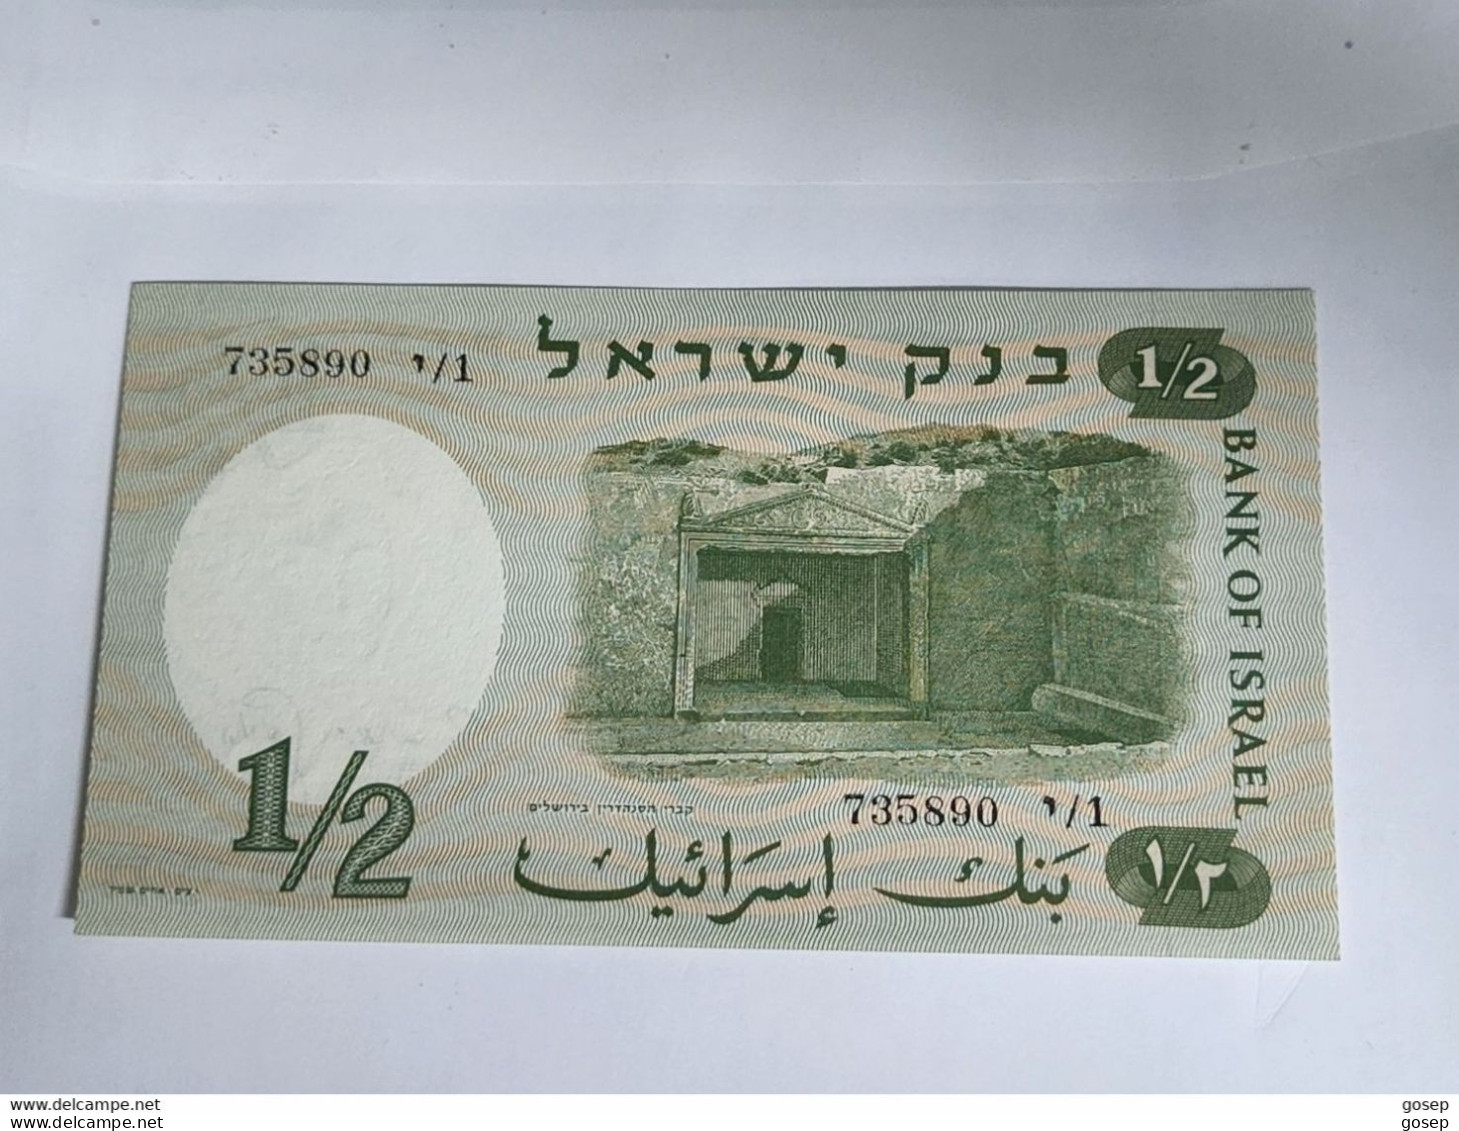 Israel-1/2 LIRA-WOMEN SOLIDER-(1958)-(rite Number From Black)-(72)-(735890-י/1)-U.N.C-BANK NOTE - Israel